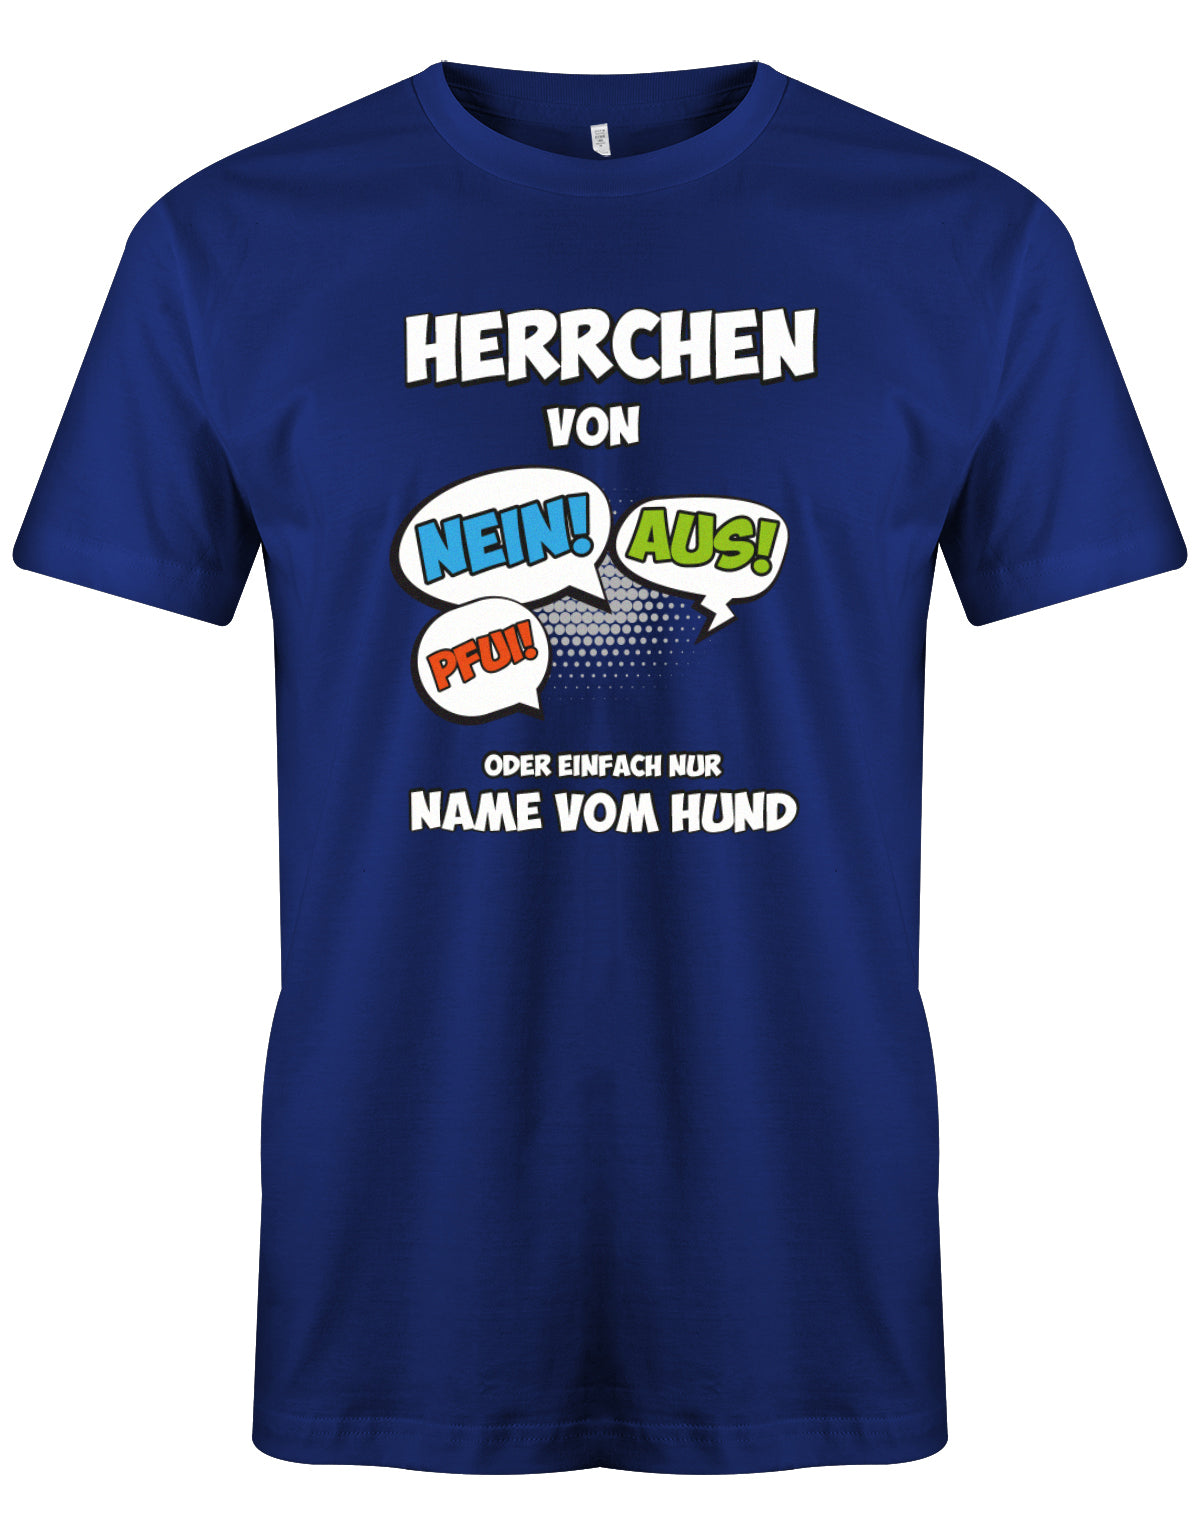 herren-shirt-royalblauEWt7vXFgaxbhP